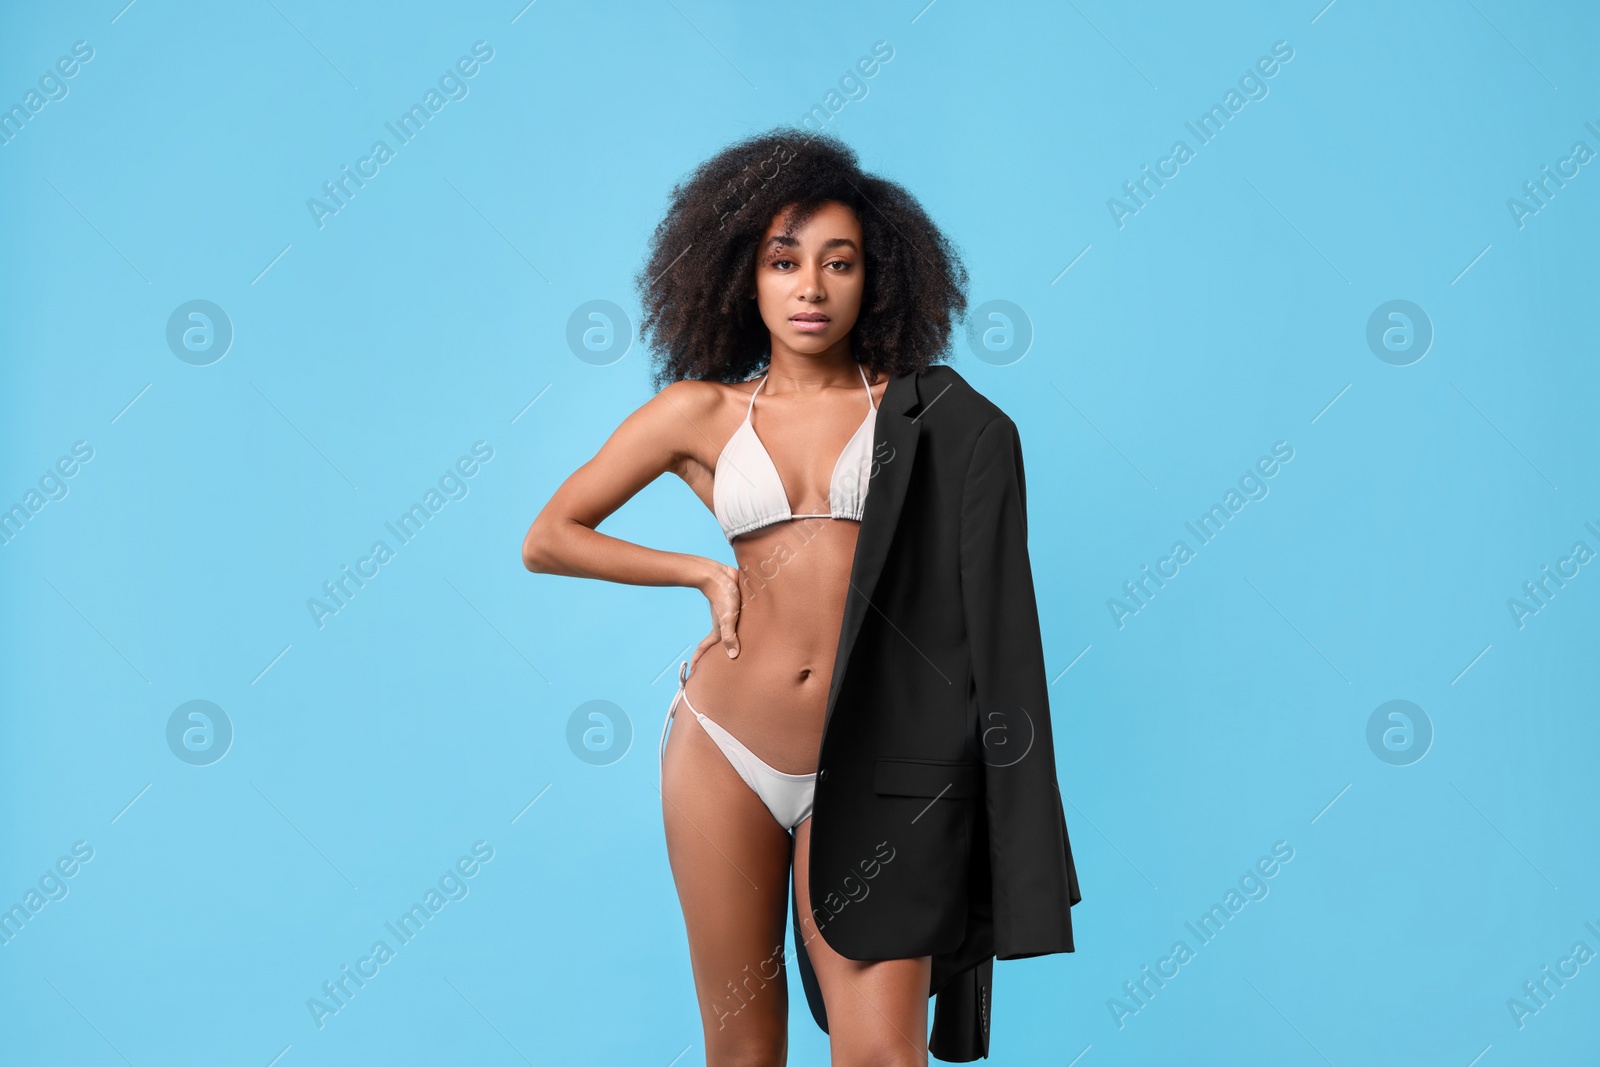 Photo of Beautiful woman in stylish bikini and jacket on light blue background